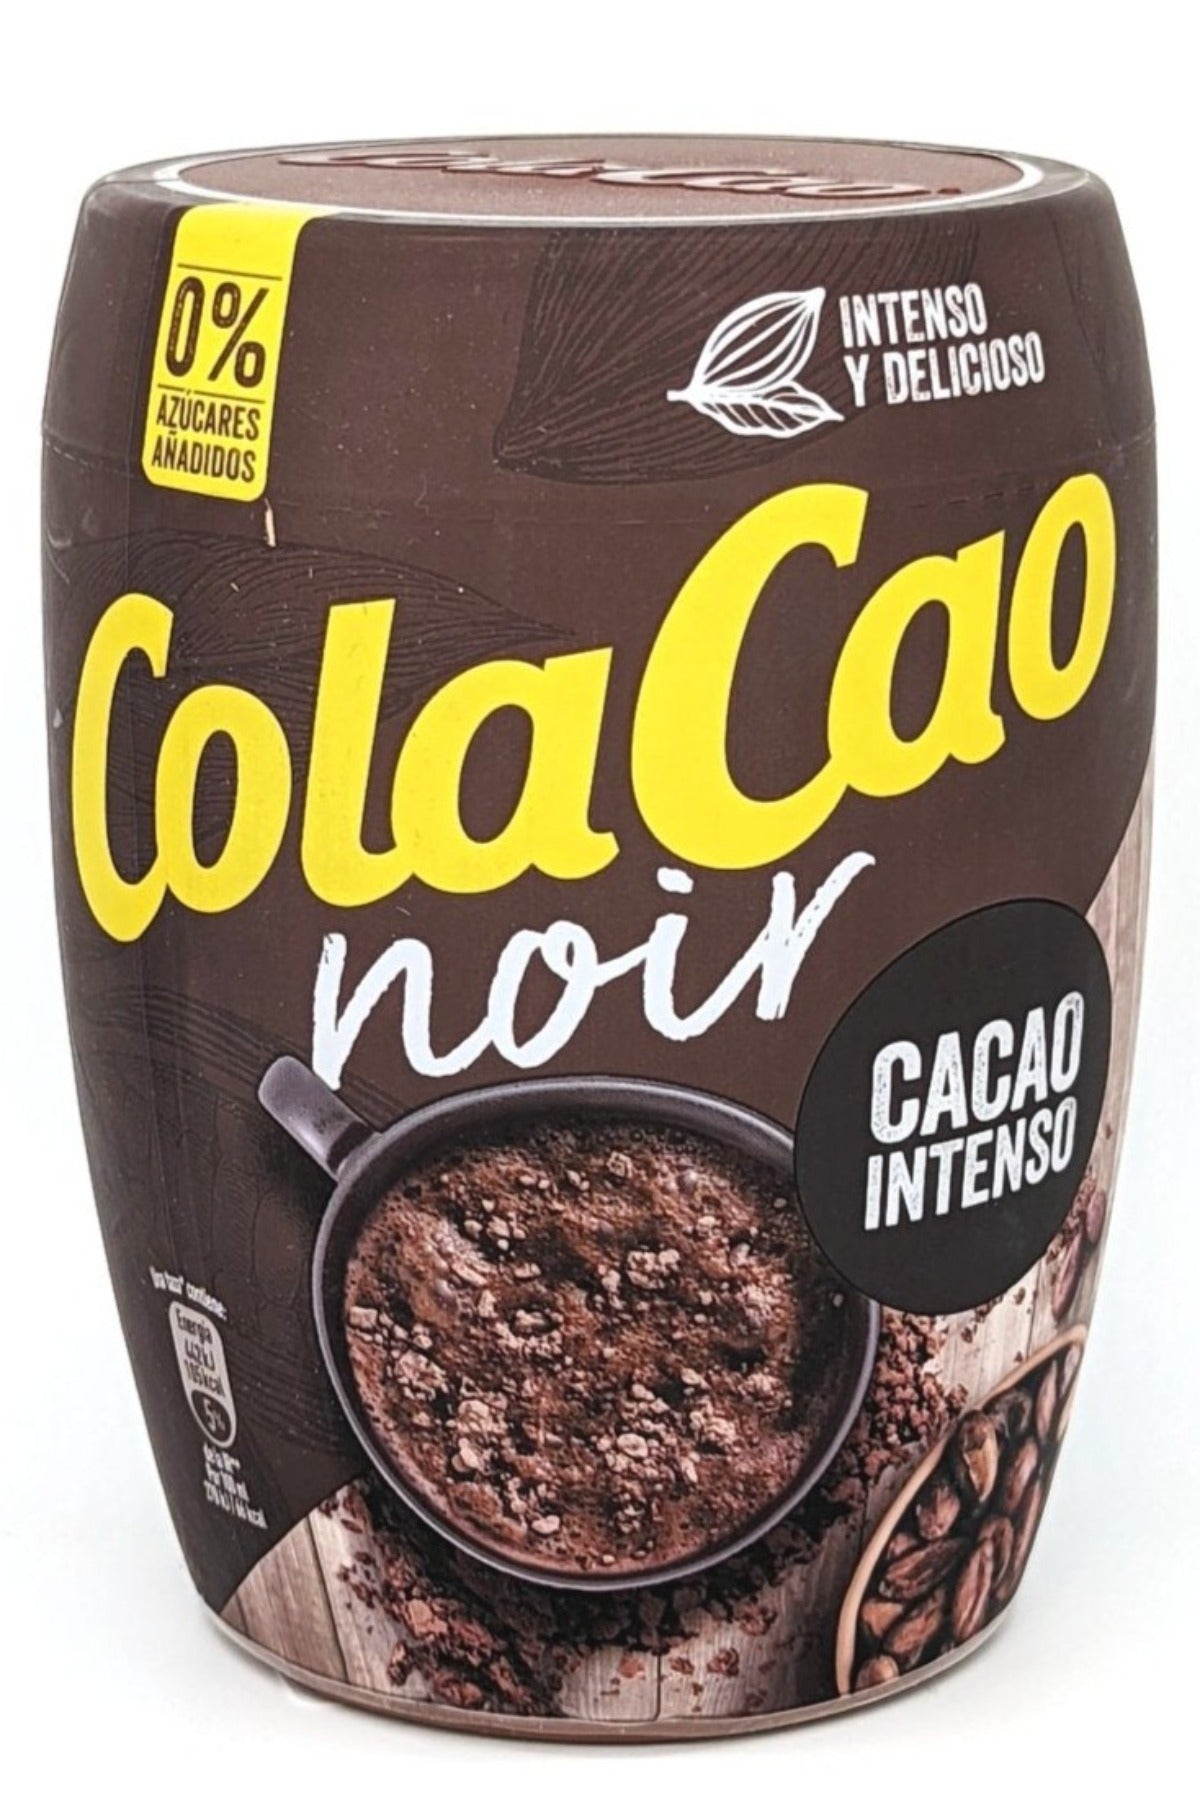 COLACAO 0% 300G